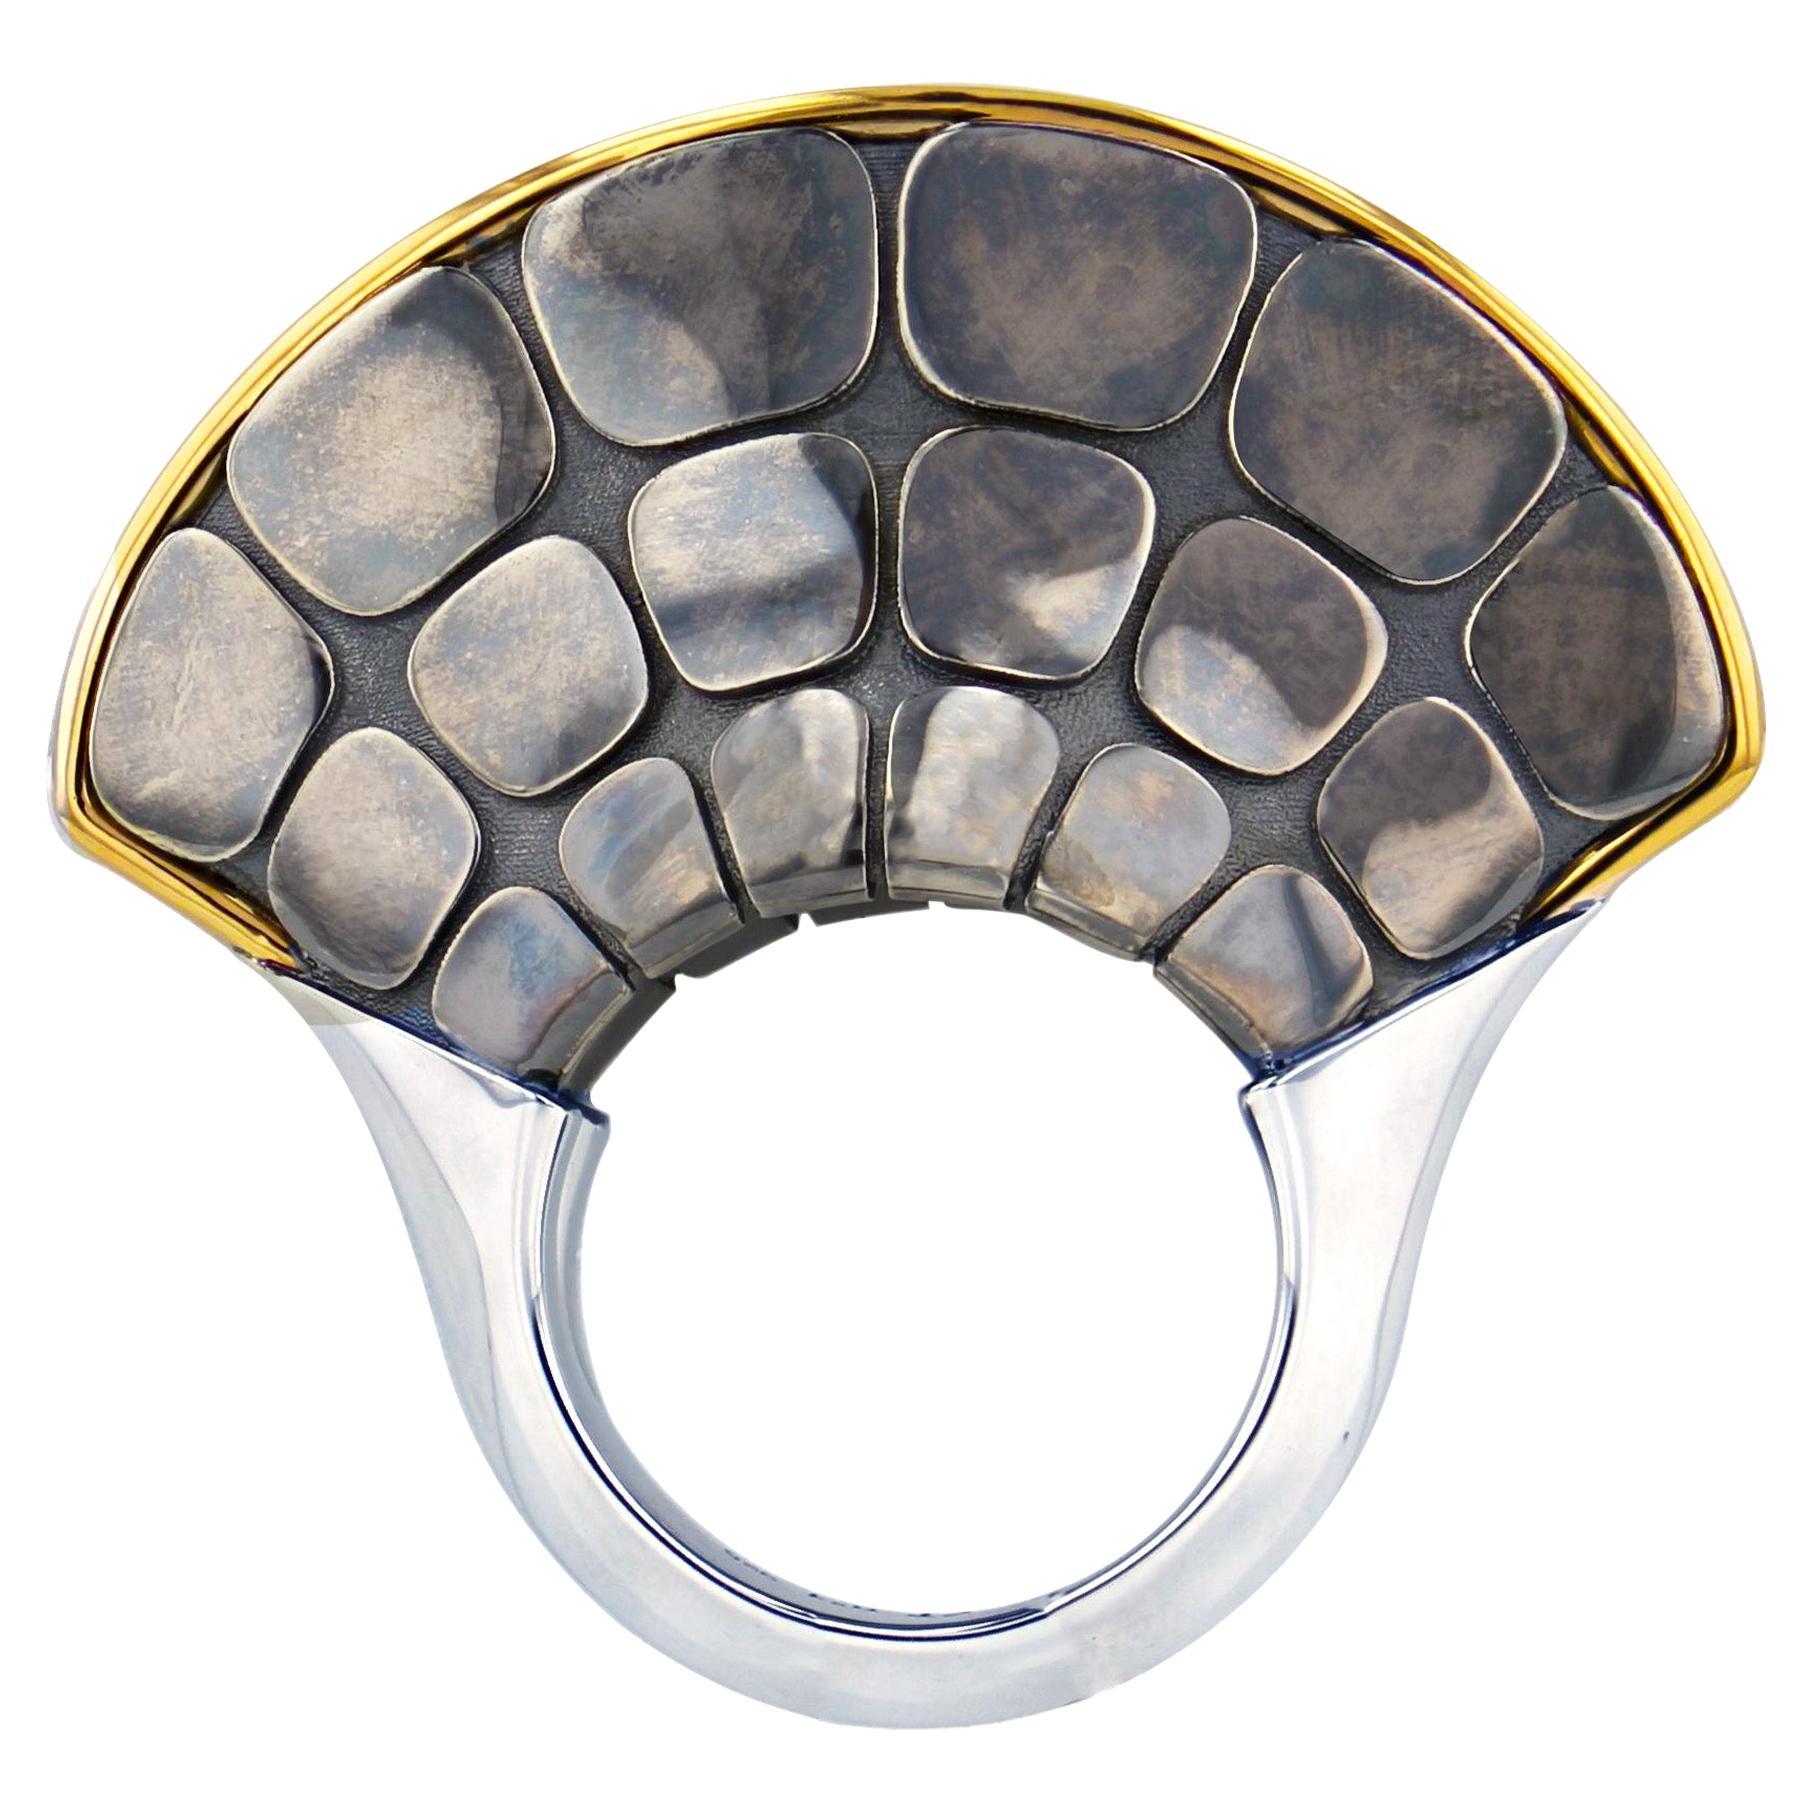 Grande Dorsal-Ring aus 18 Karat Gelbgold und Silber im Used-Look von Elie Top